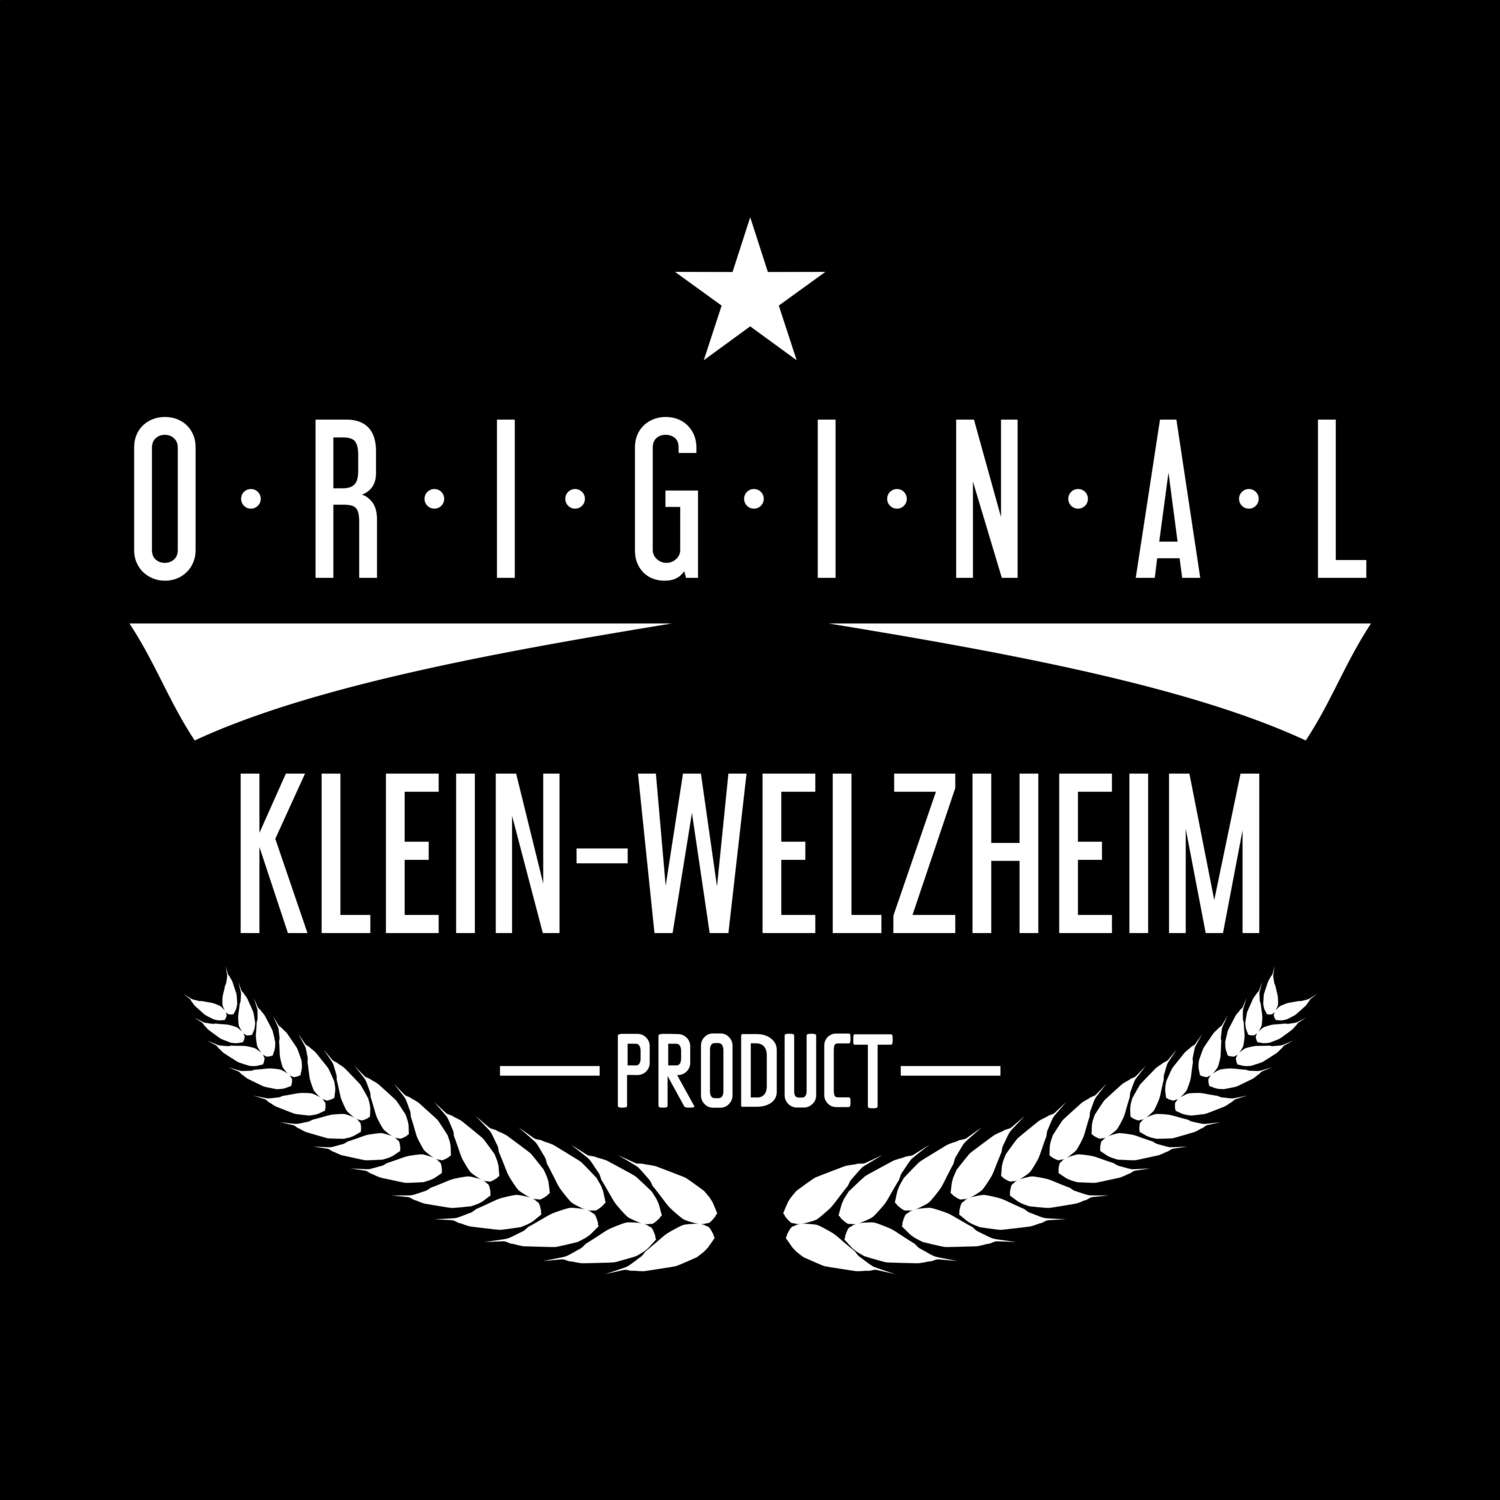 Klein-Welzheim T-Shirt »Original Product«